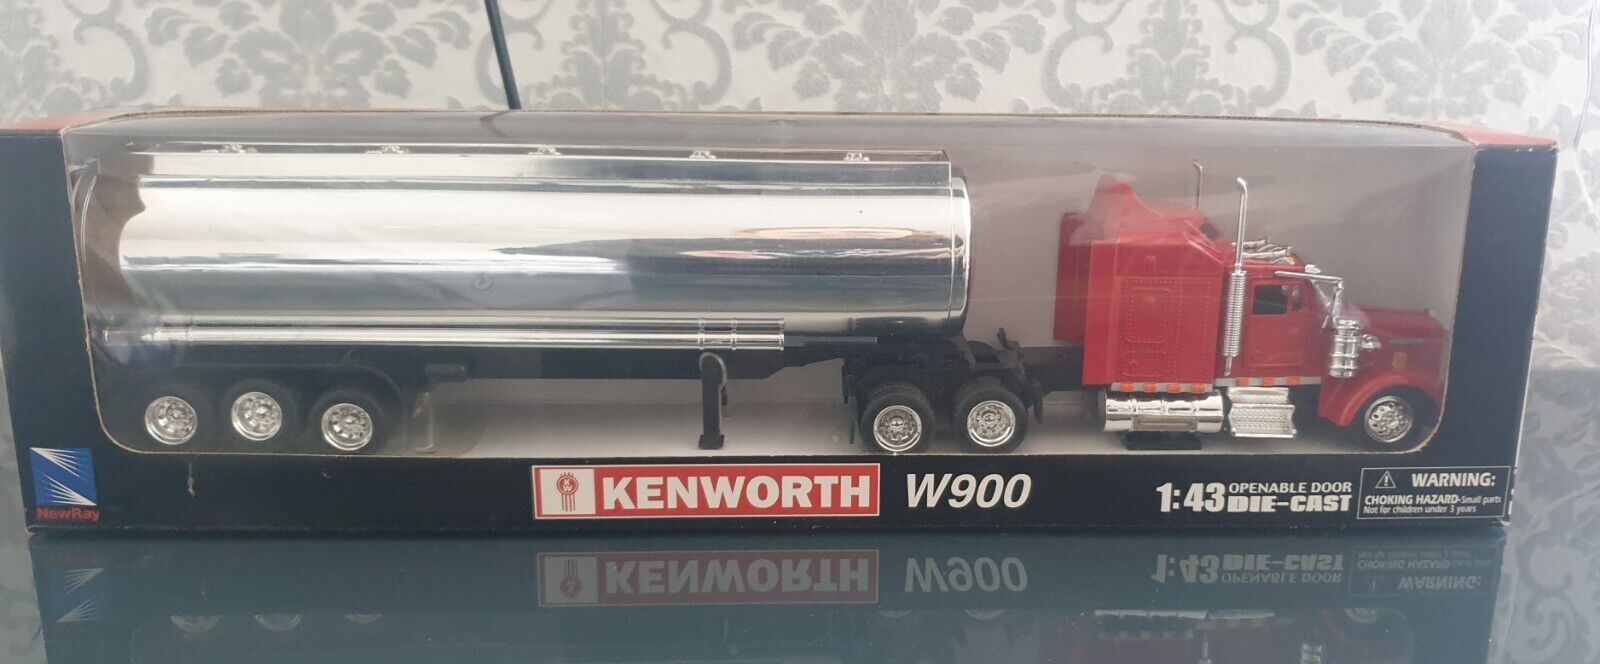 Kenworth W900 Tankwagen Sattelauflieger 143 Rot-Silber Neu